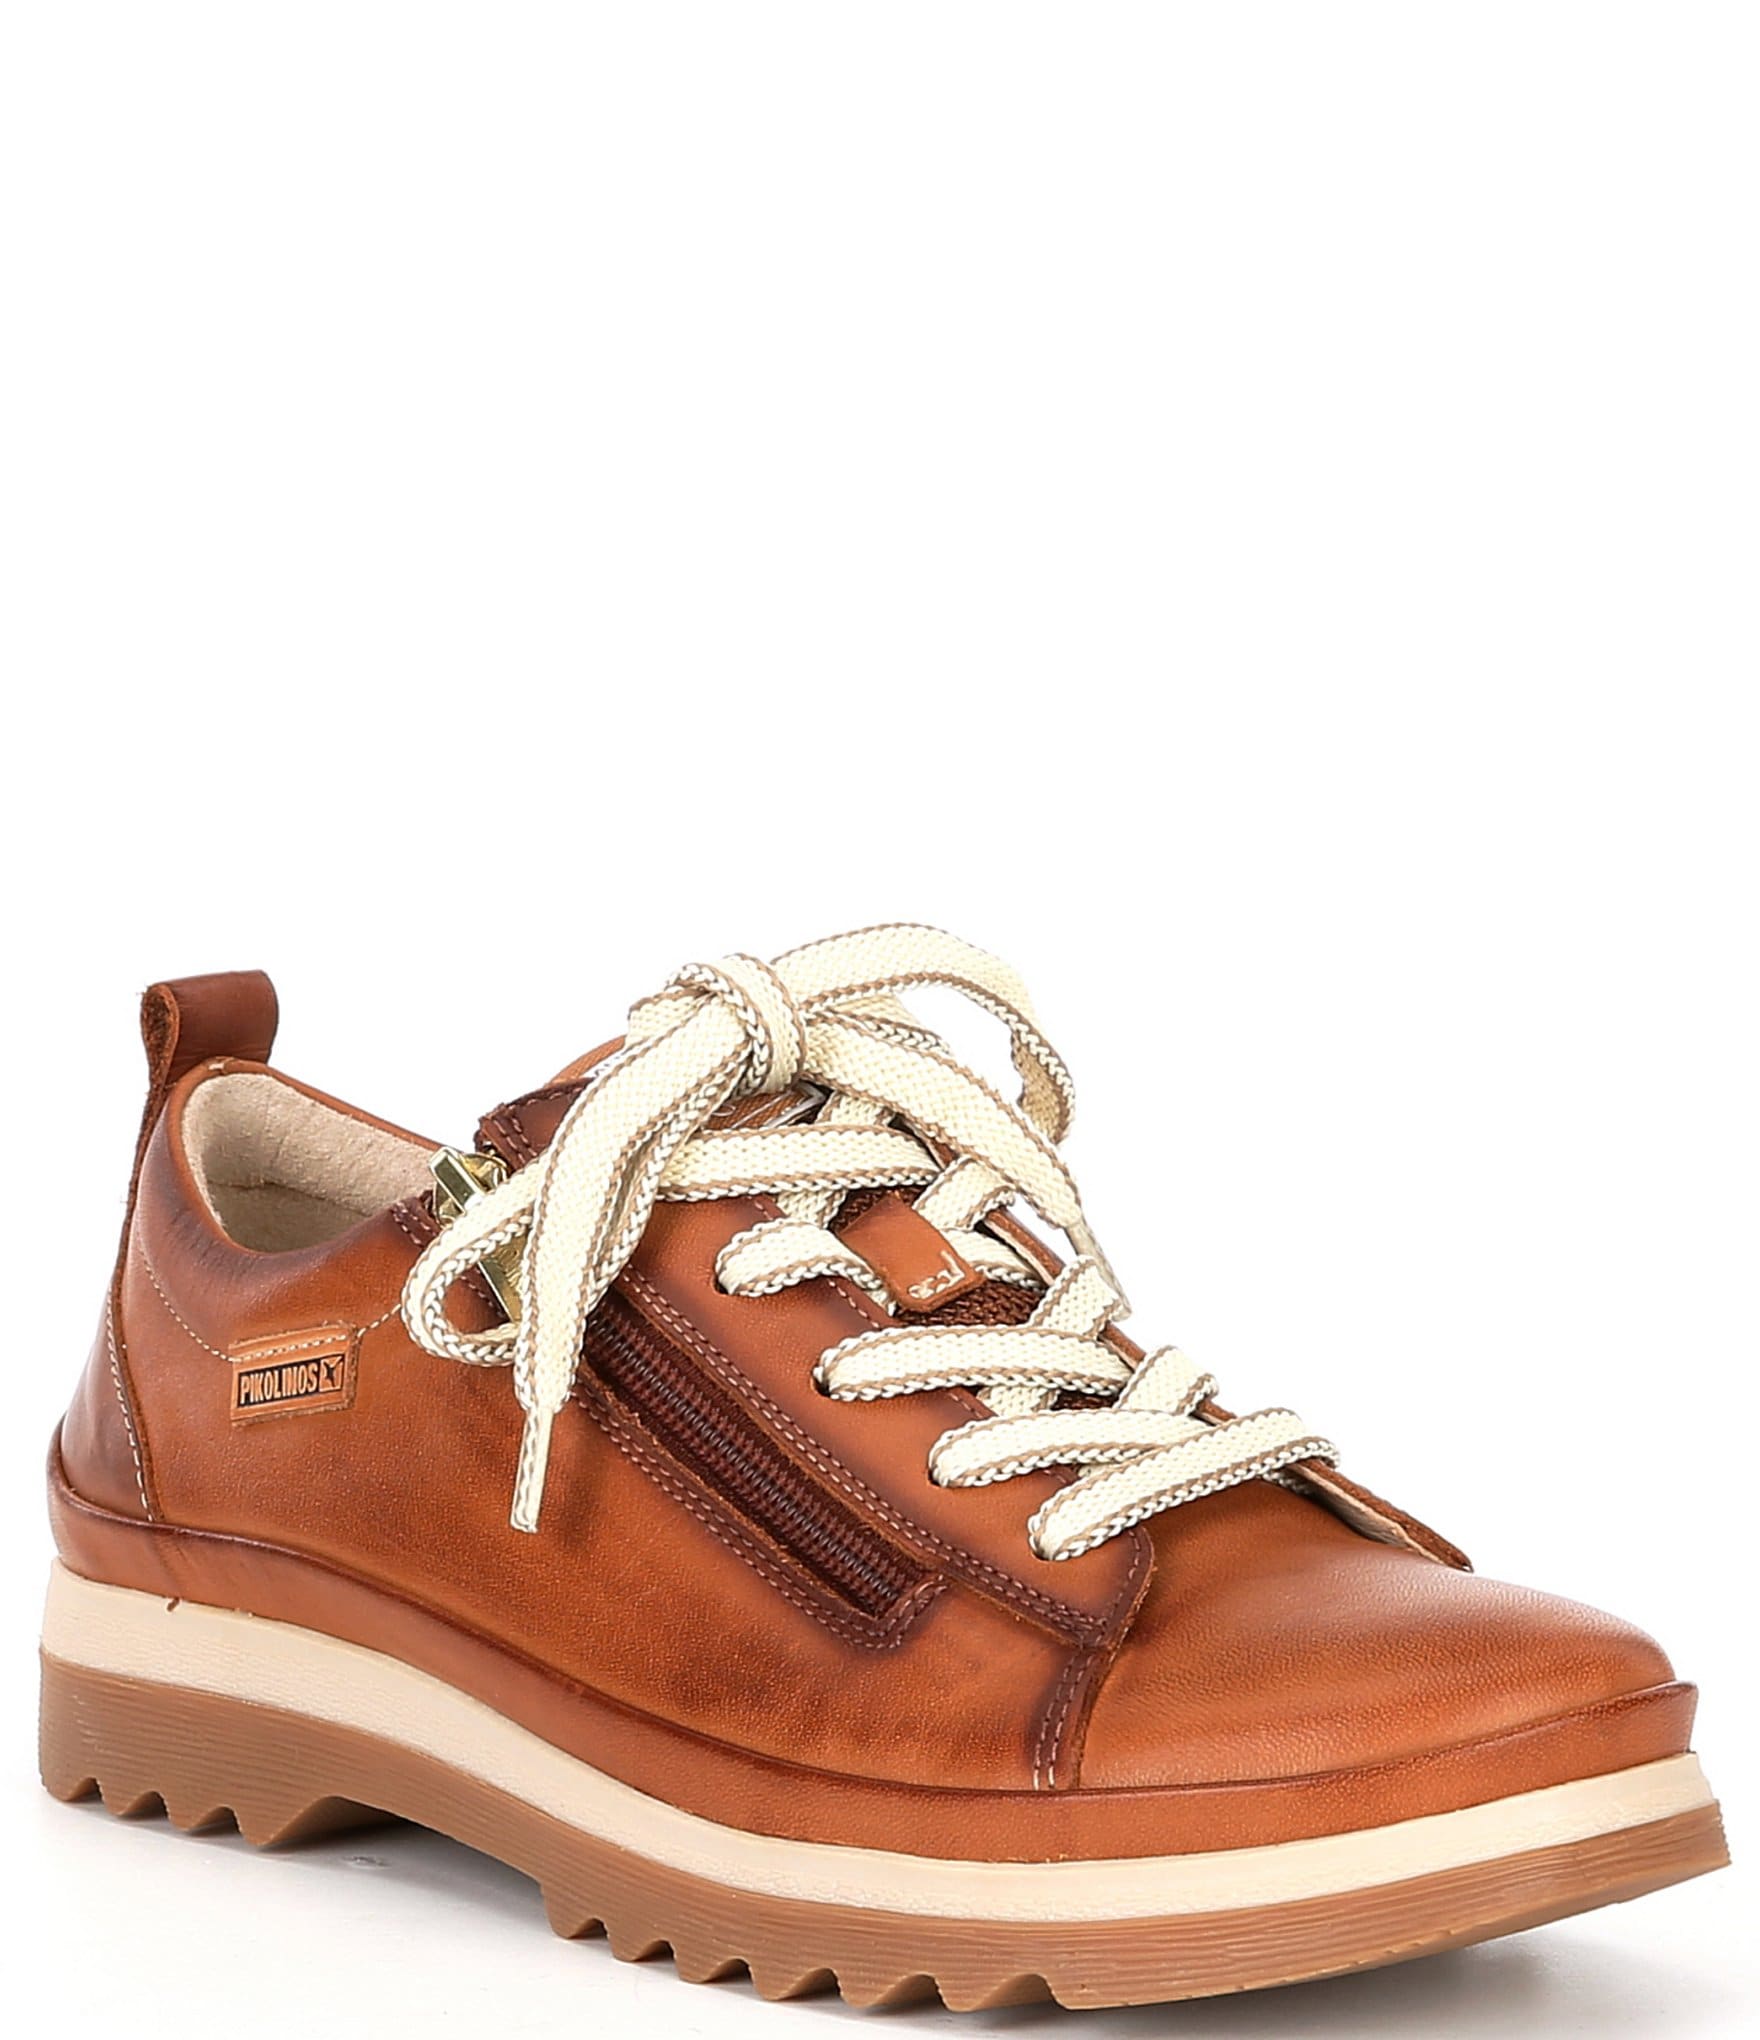 Pikolinos Vigo Lace Up Sneakers | Dillard's